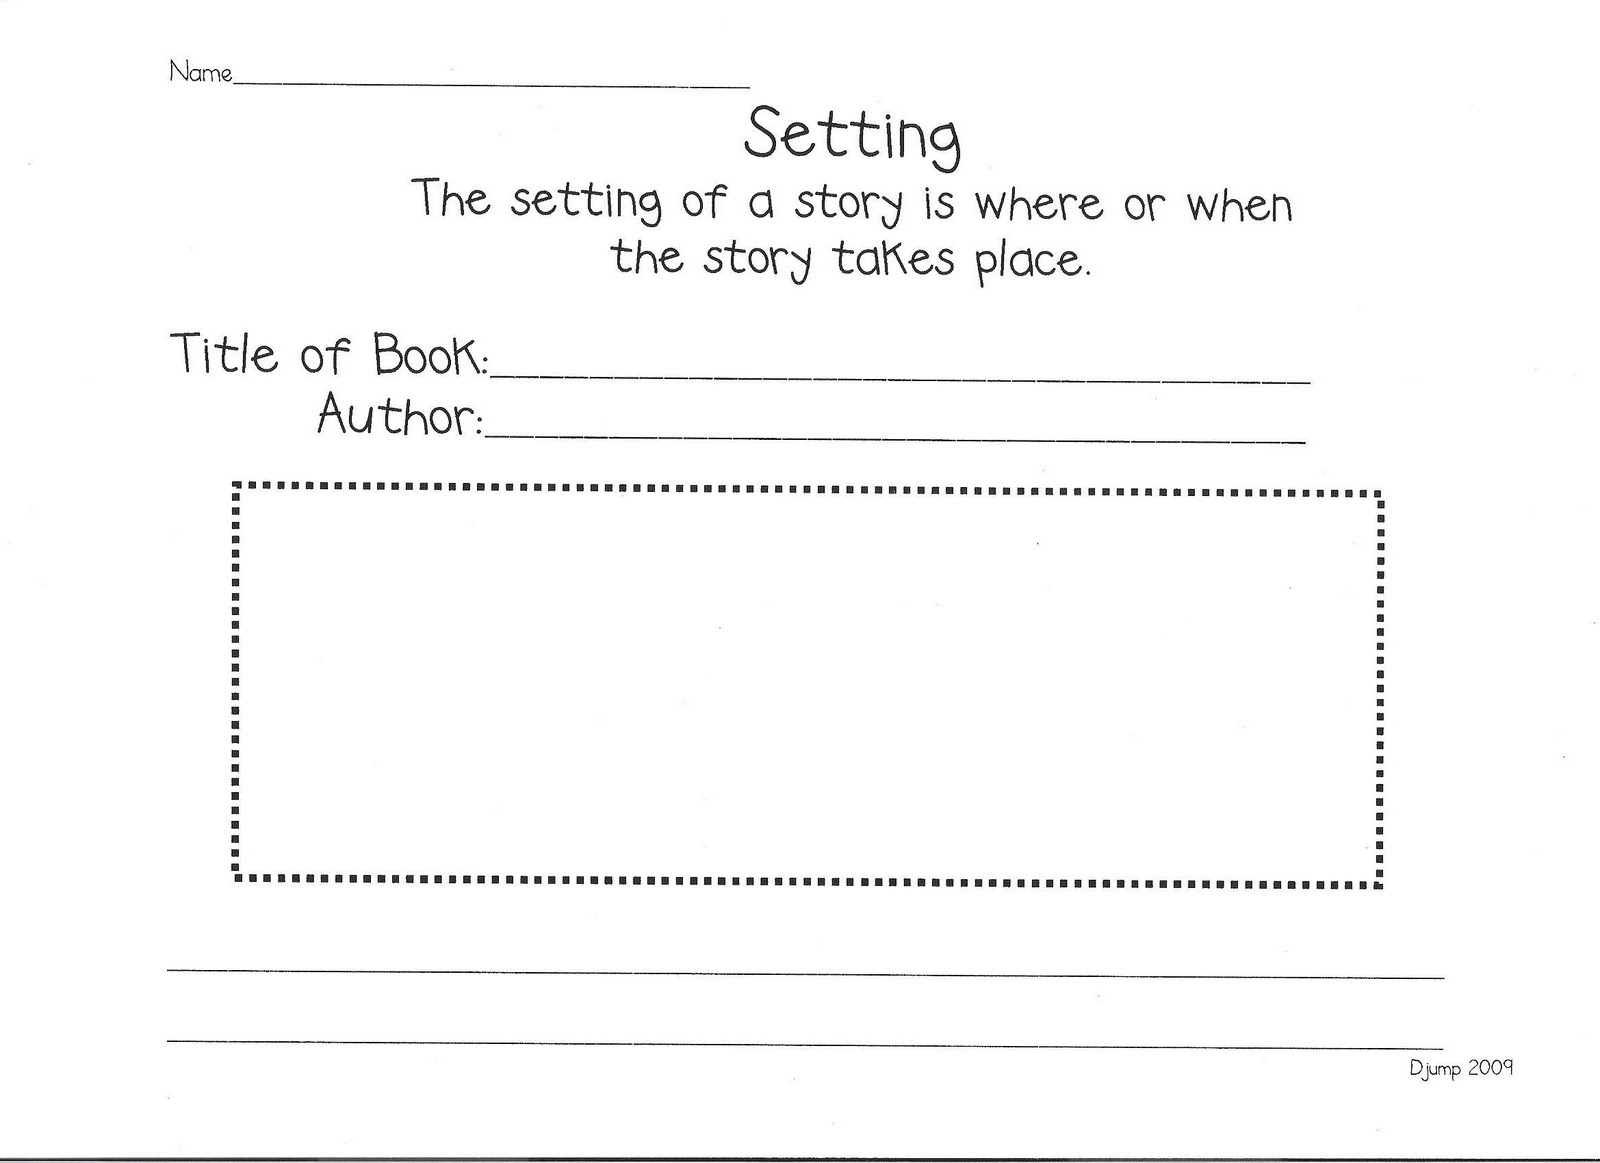 Reading Response Worksheet Kindergarten Image